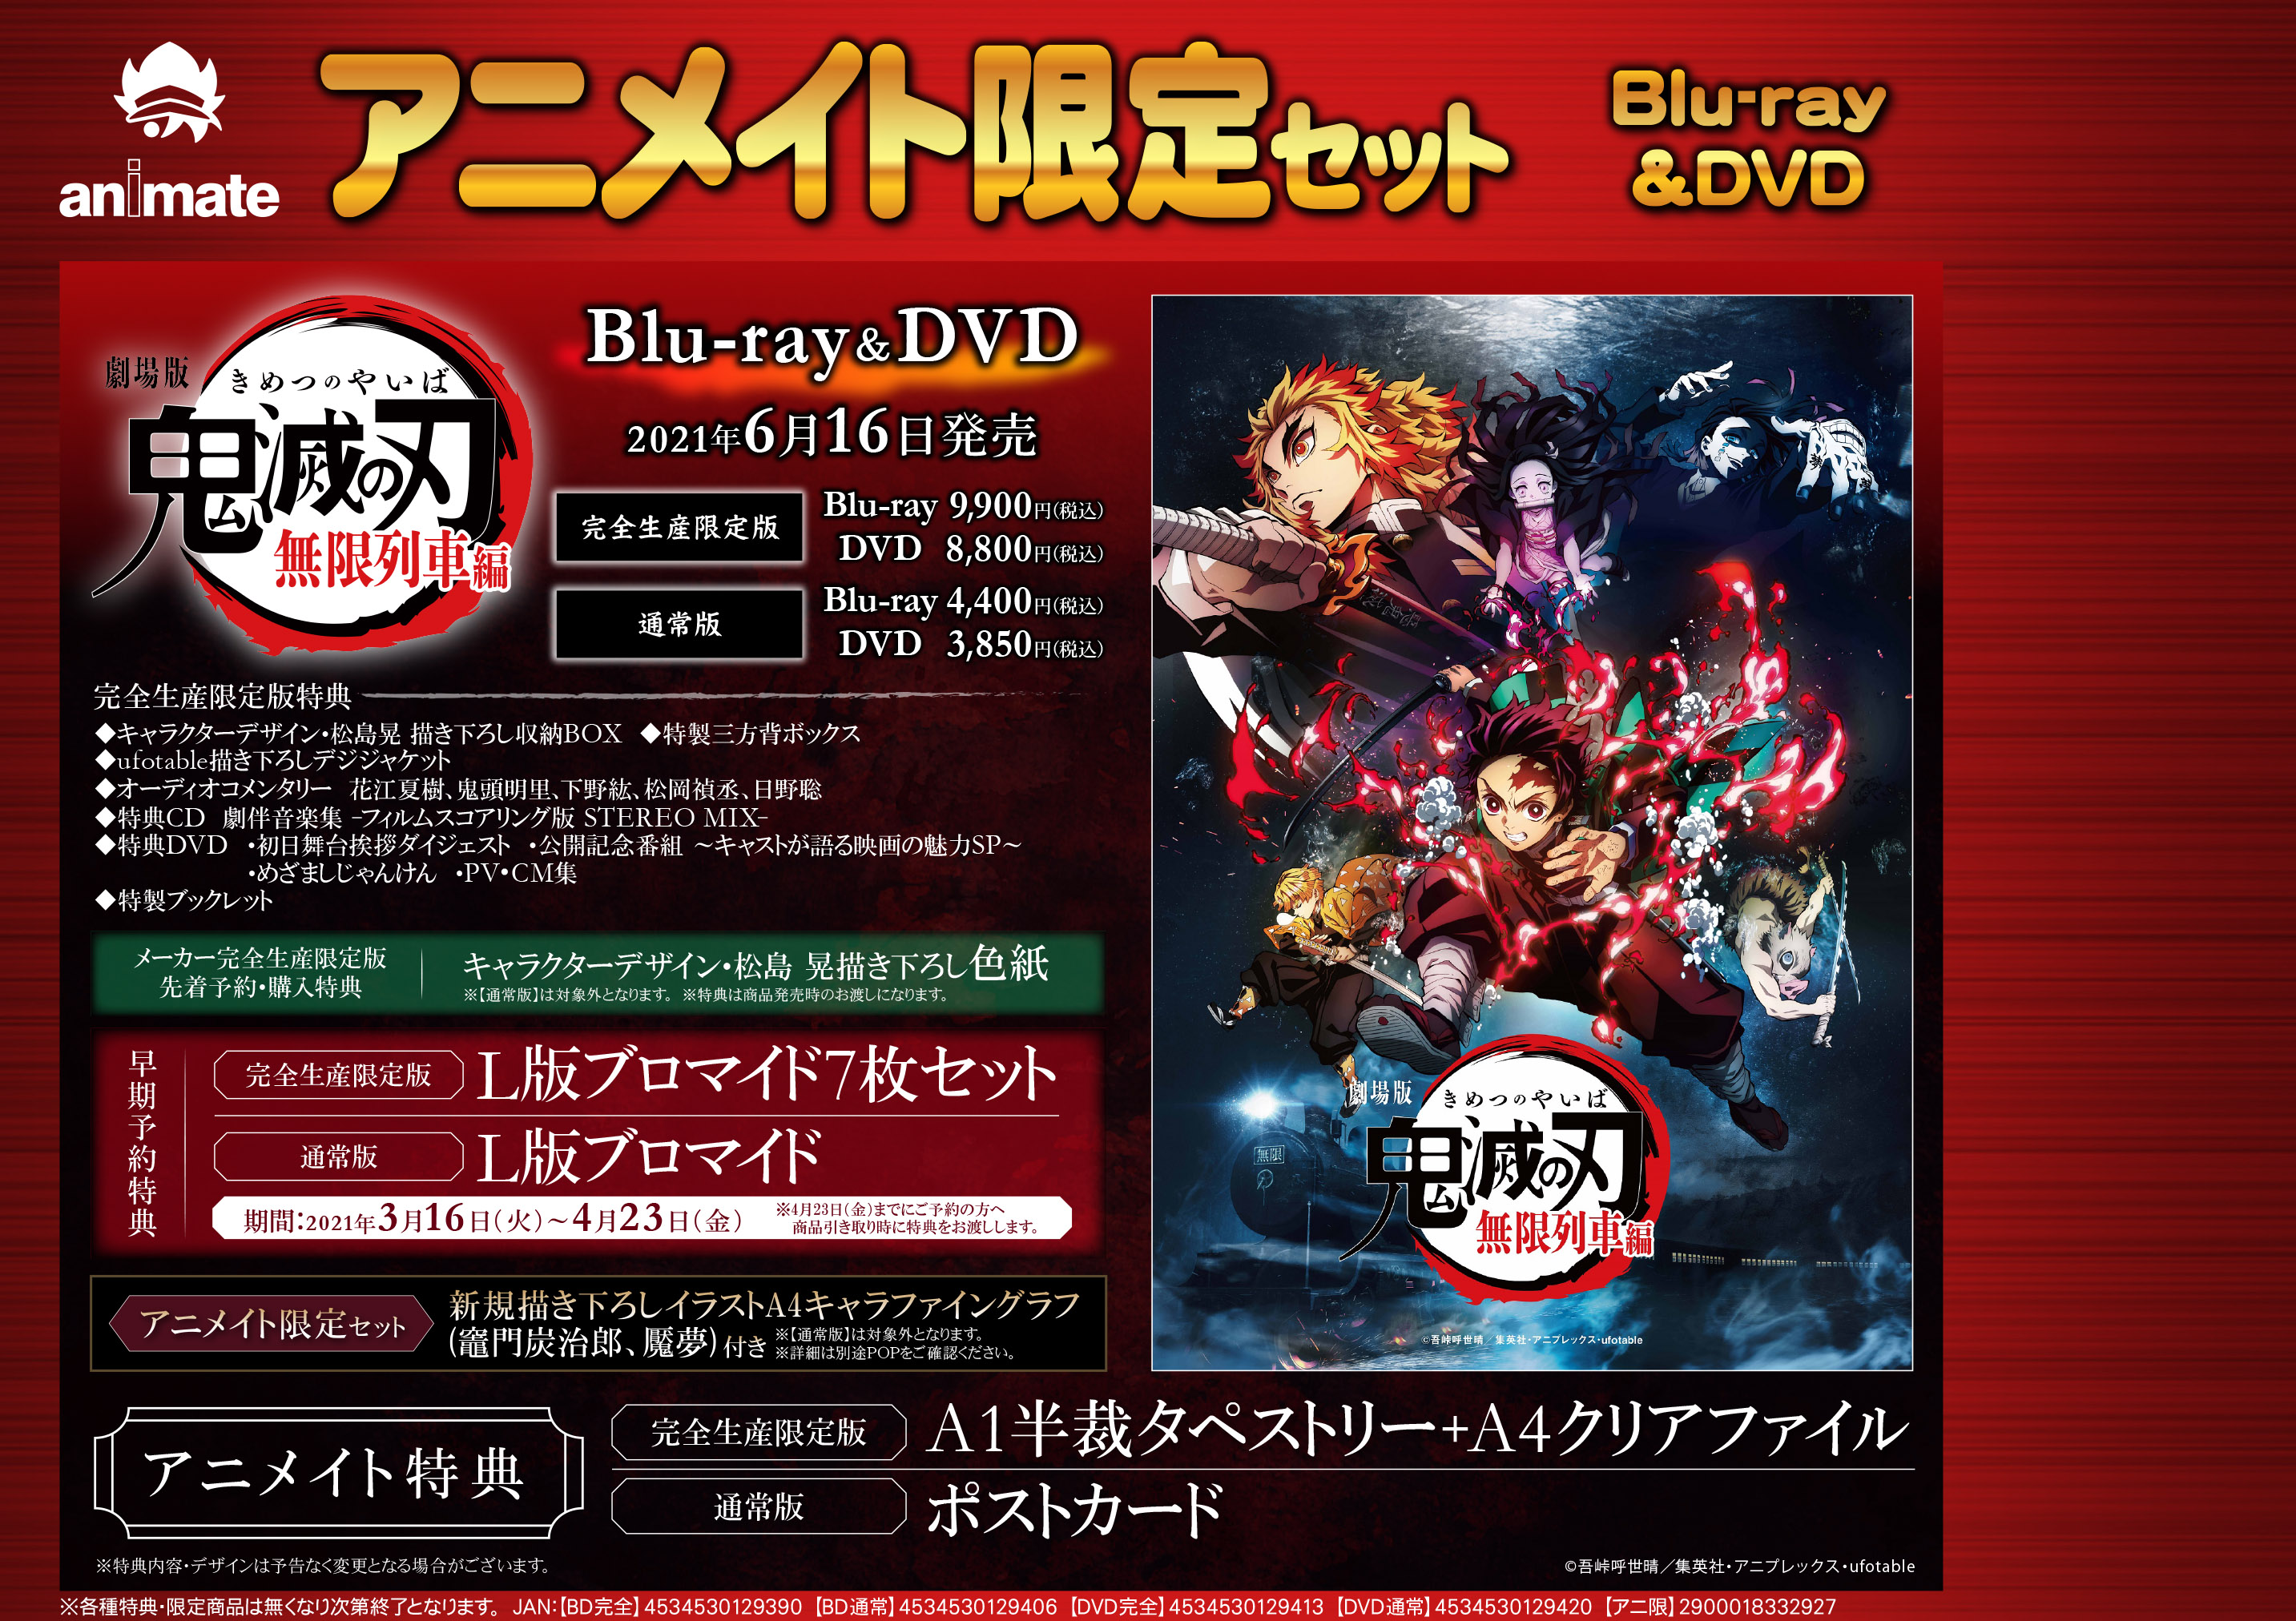 劇場版「鬼滅の刃」無限列車編 Blu-ray&DVD 発売決定‼ - アニメイト札幌